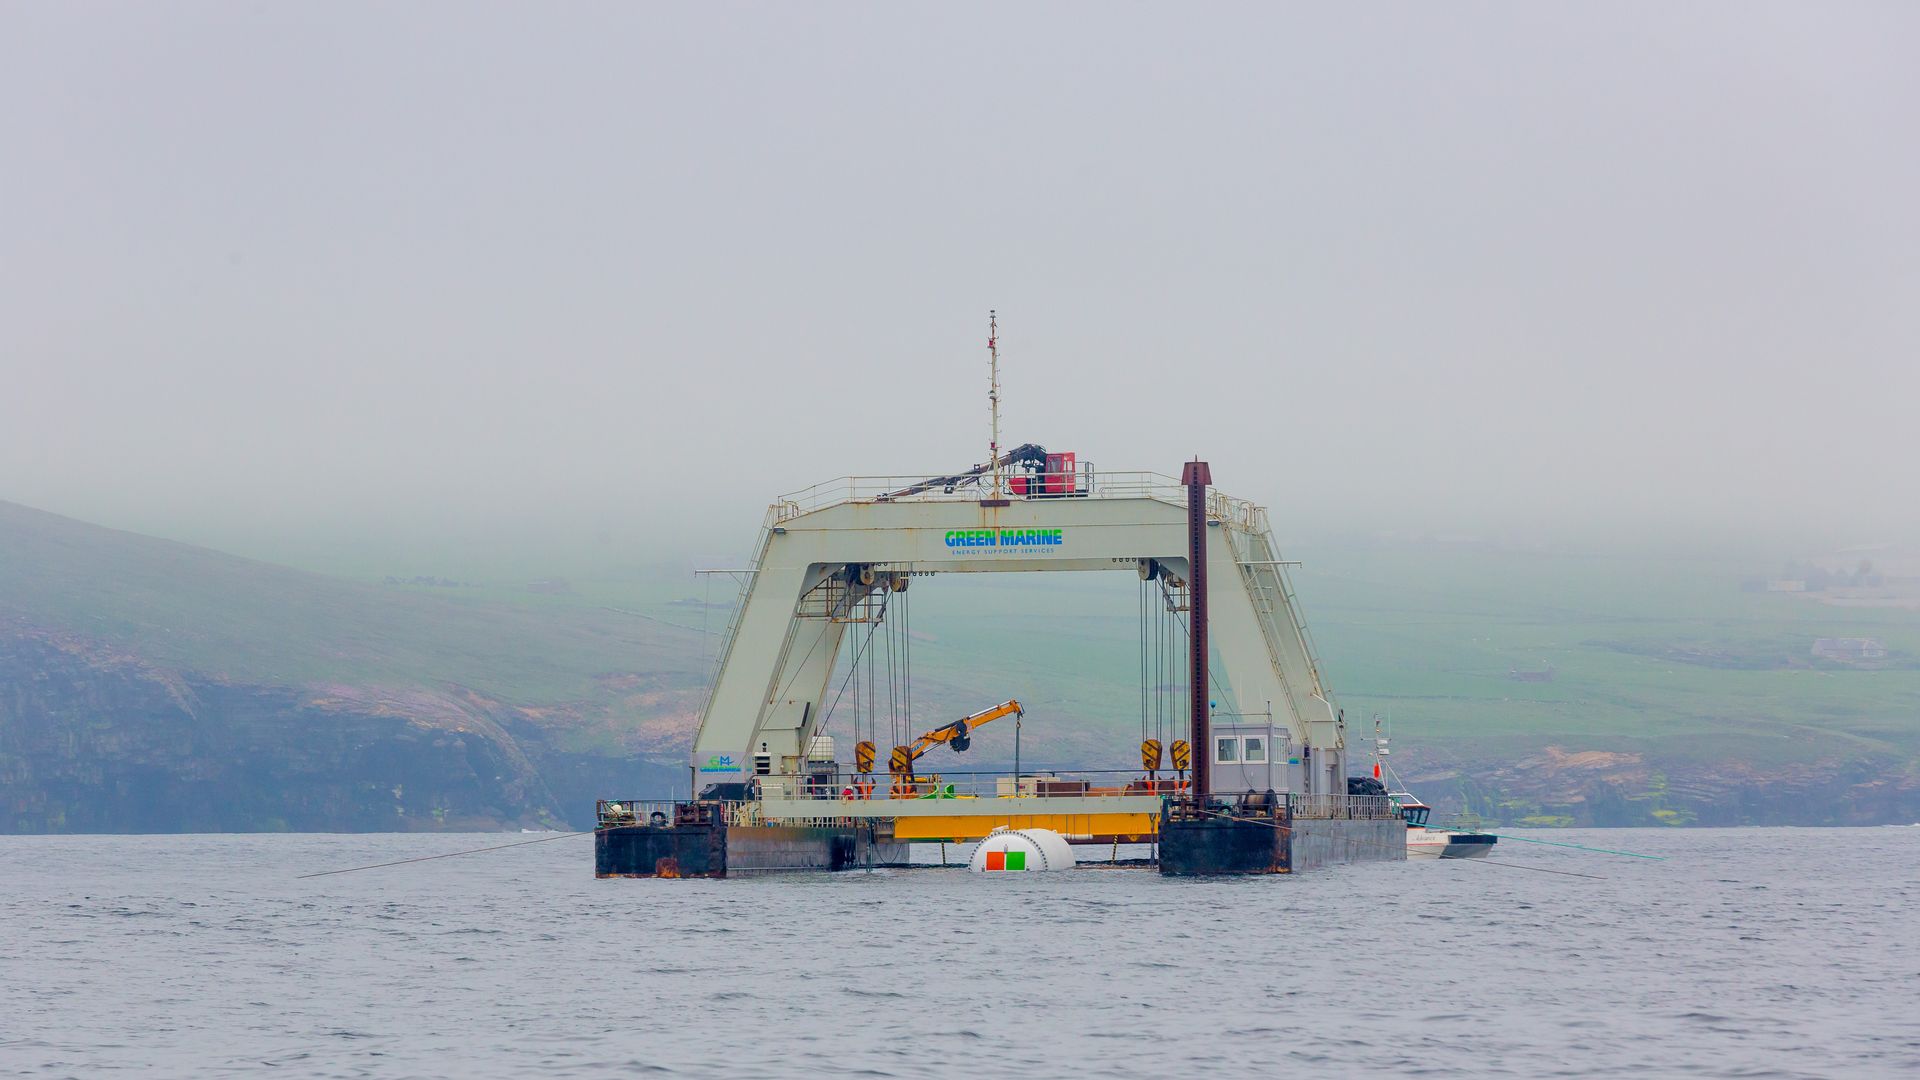 undersea data center being deployed